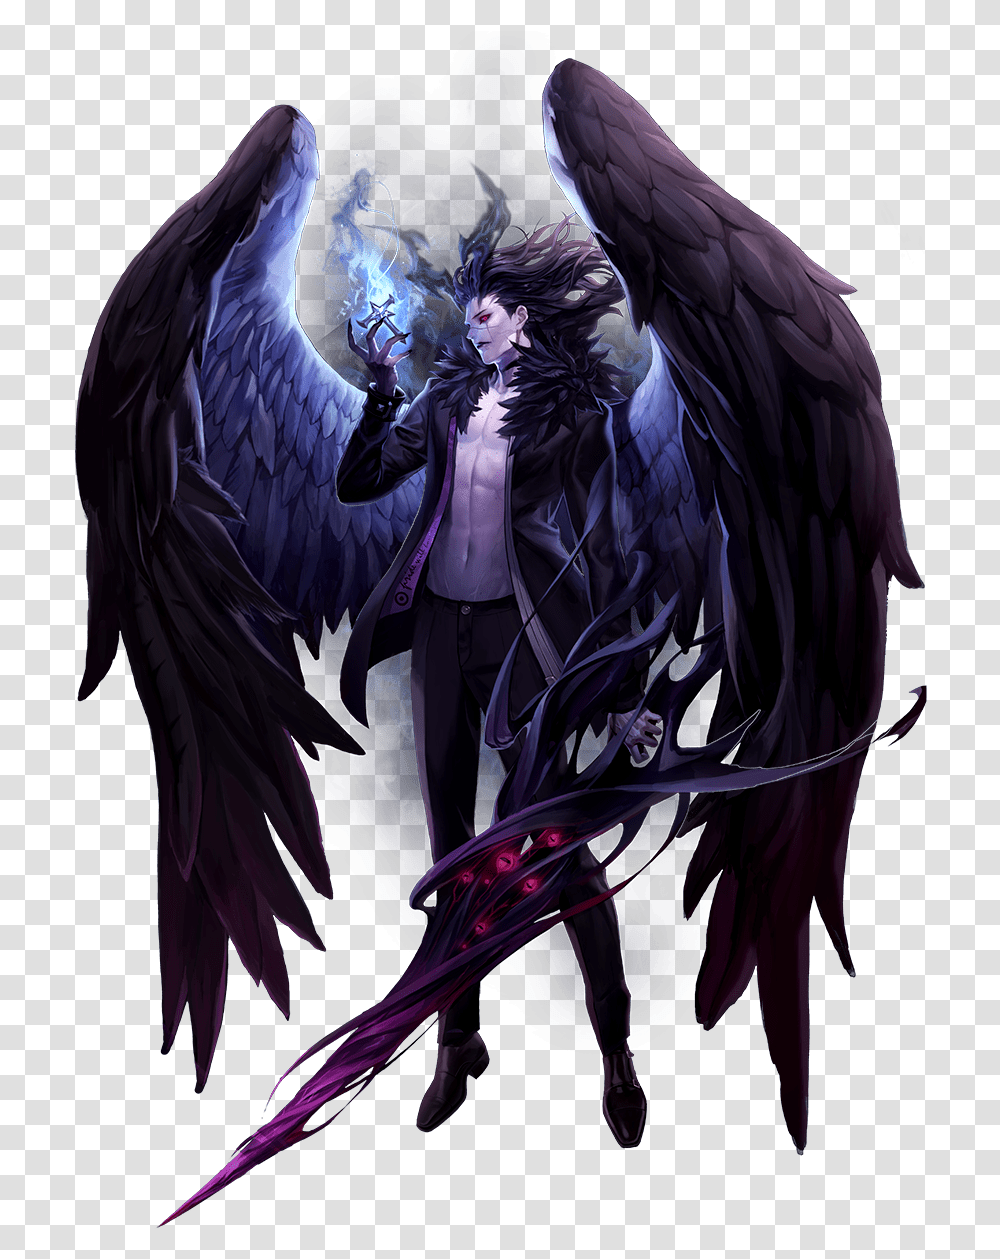 Demon Anime Concept Art Download Demon Anime Concept Art, Angel, Archangel, Person, Human Transparent Png